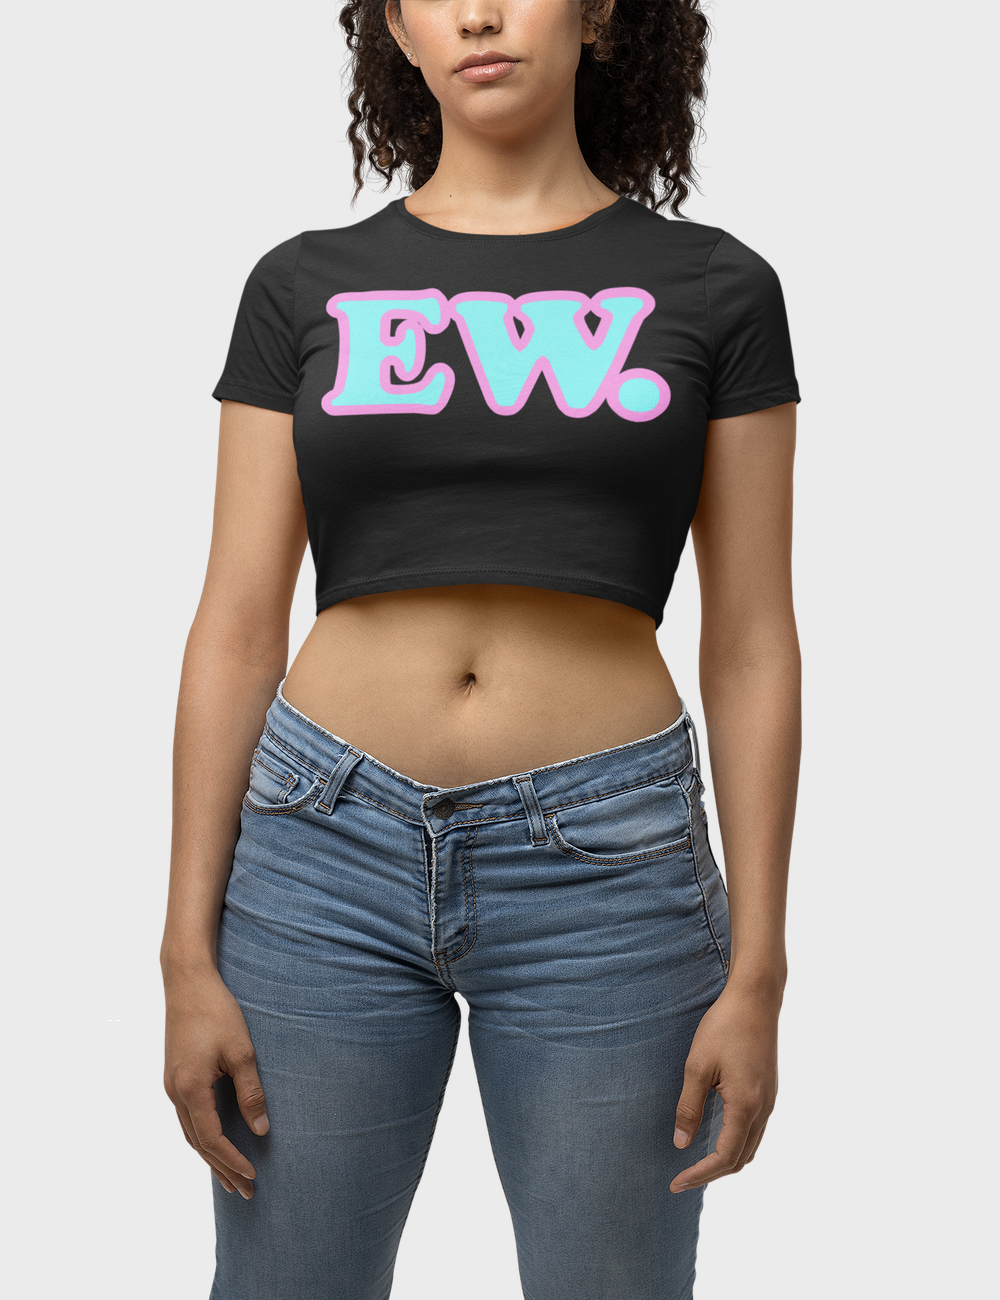 EW. | Women's Fitted Crop Top T-Shirt OniTakai